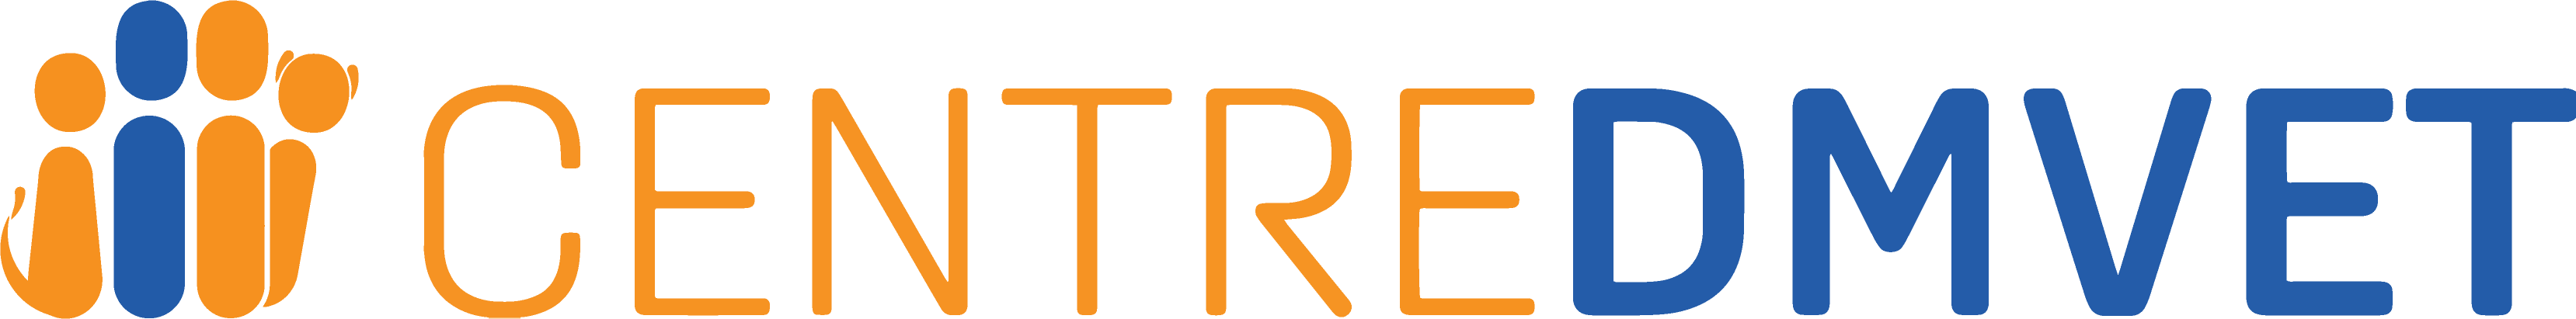 CENTREDMVET logo